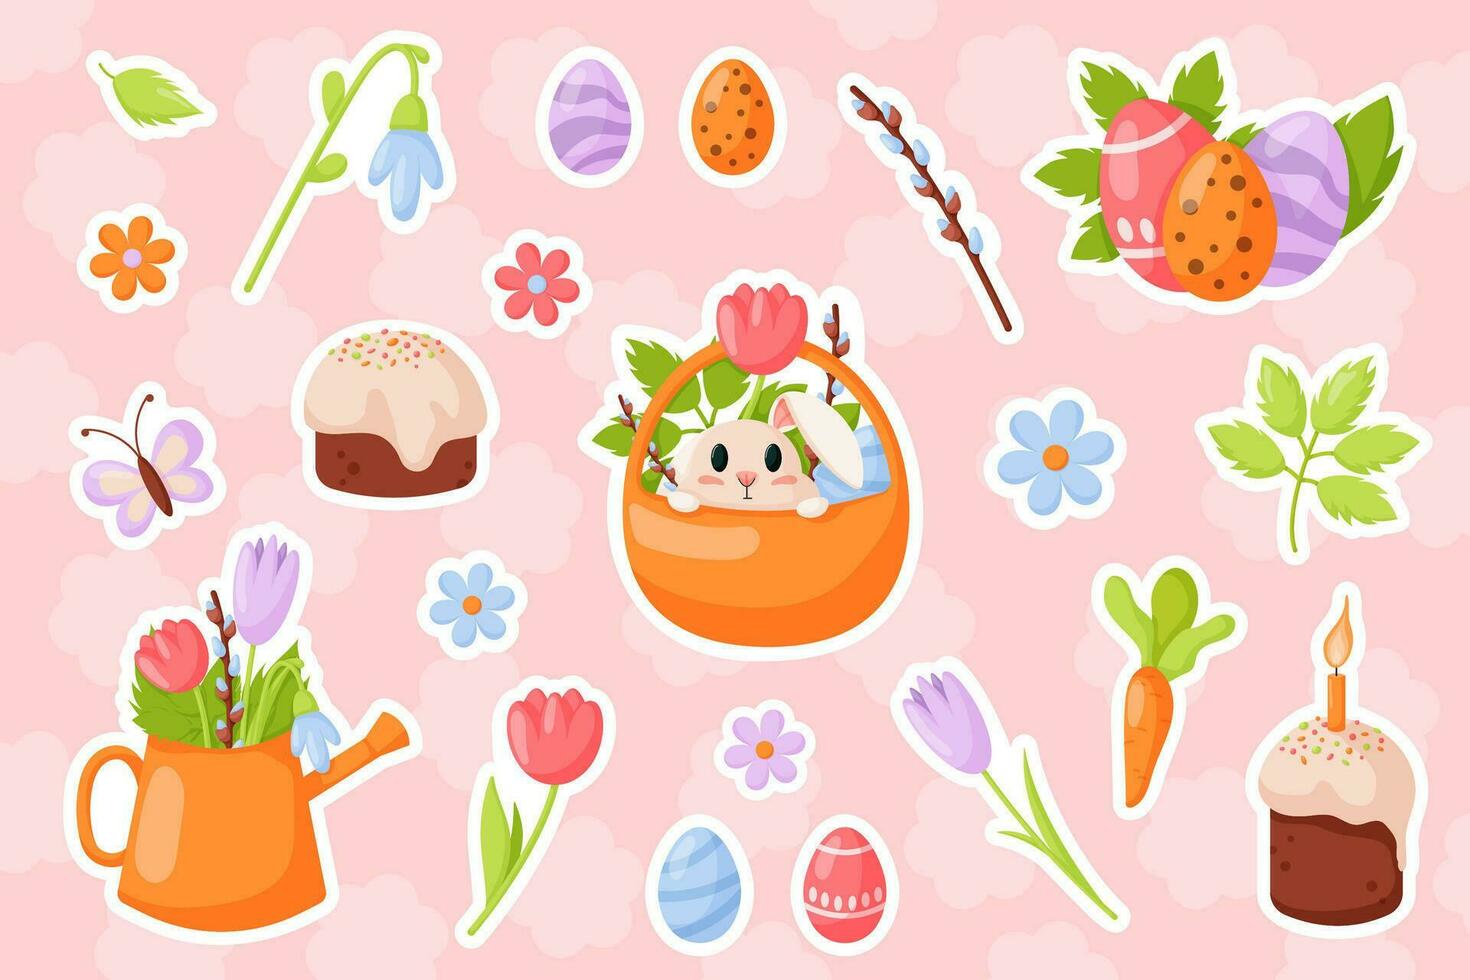 Lycklig påsk samling klistermärke i tecknad serie platt stil. krokus, tulpan, påsk paj, ljus, blommor, kanin, korg, morot och fjäril. vektor illustration isolerat på en rosa bakgrund.